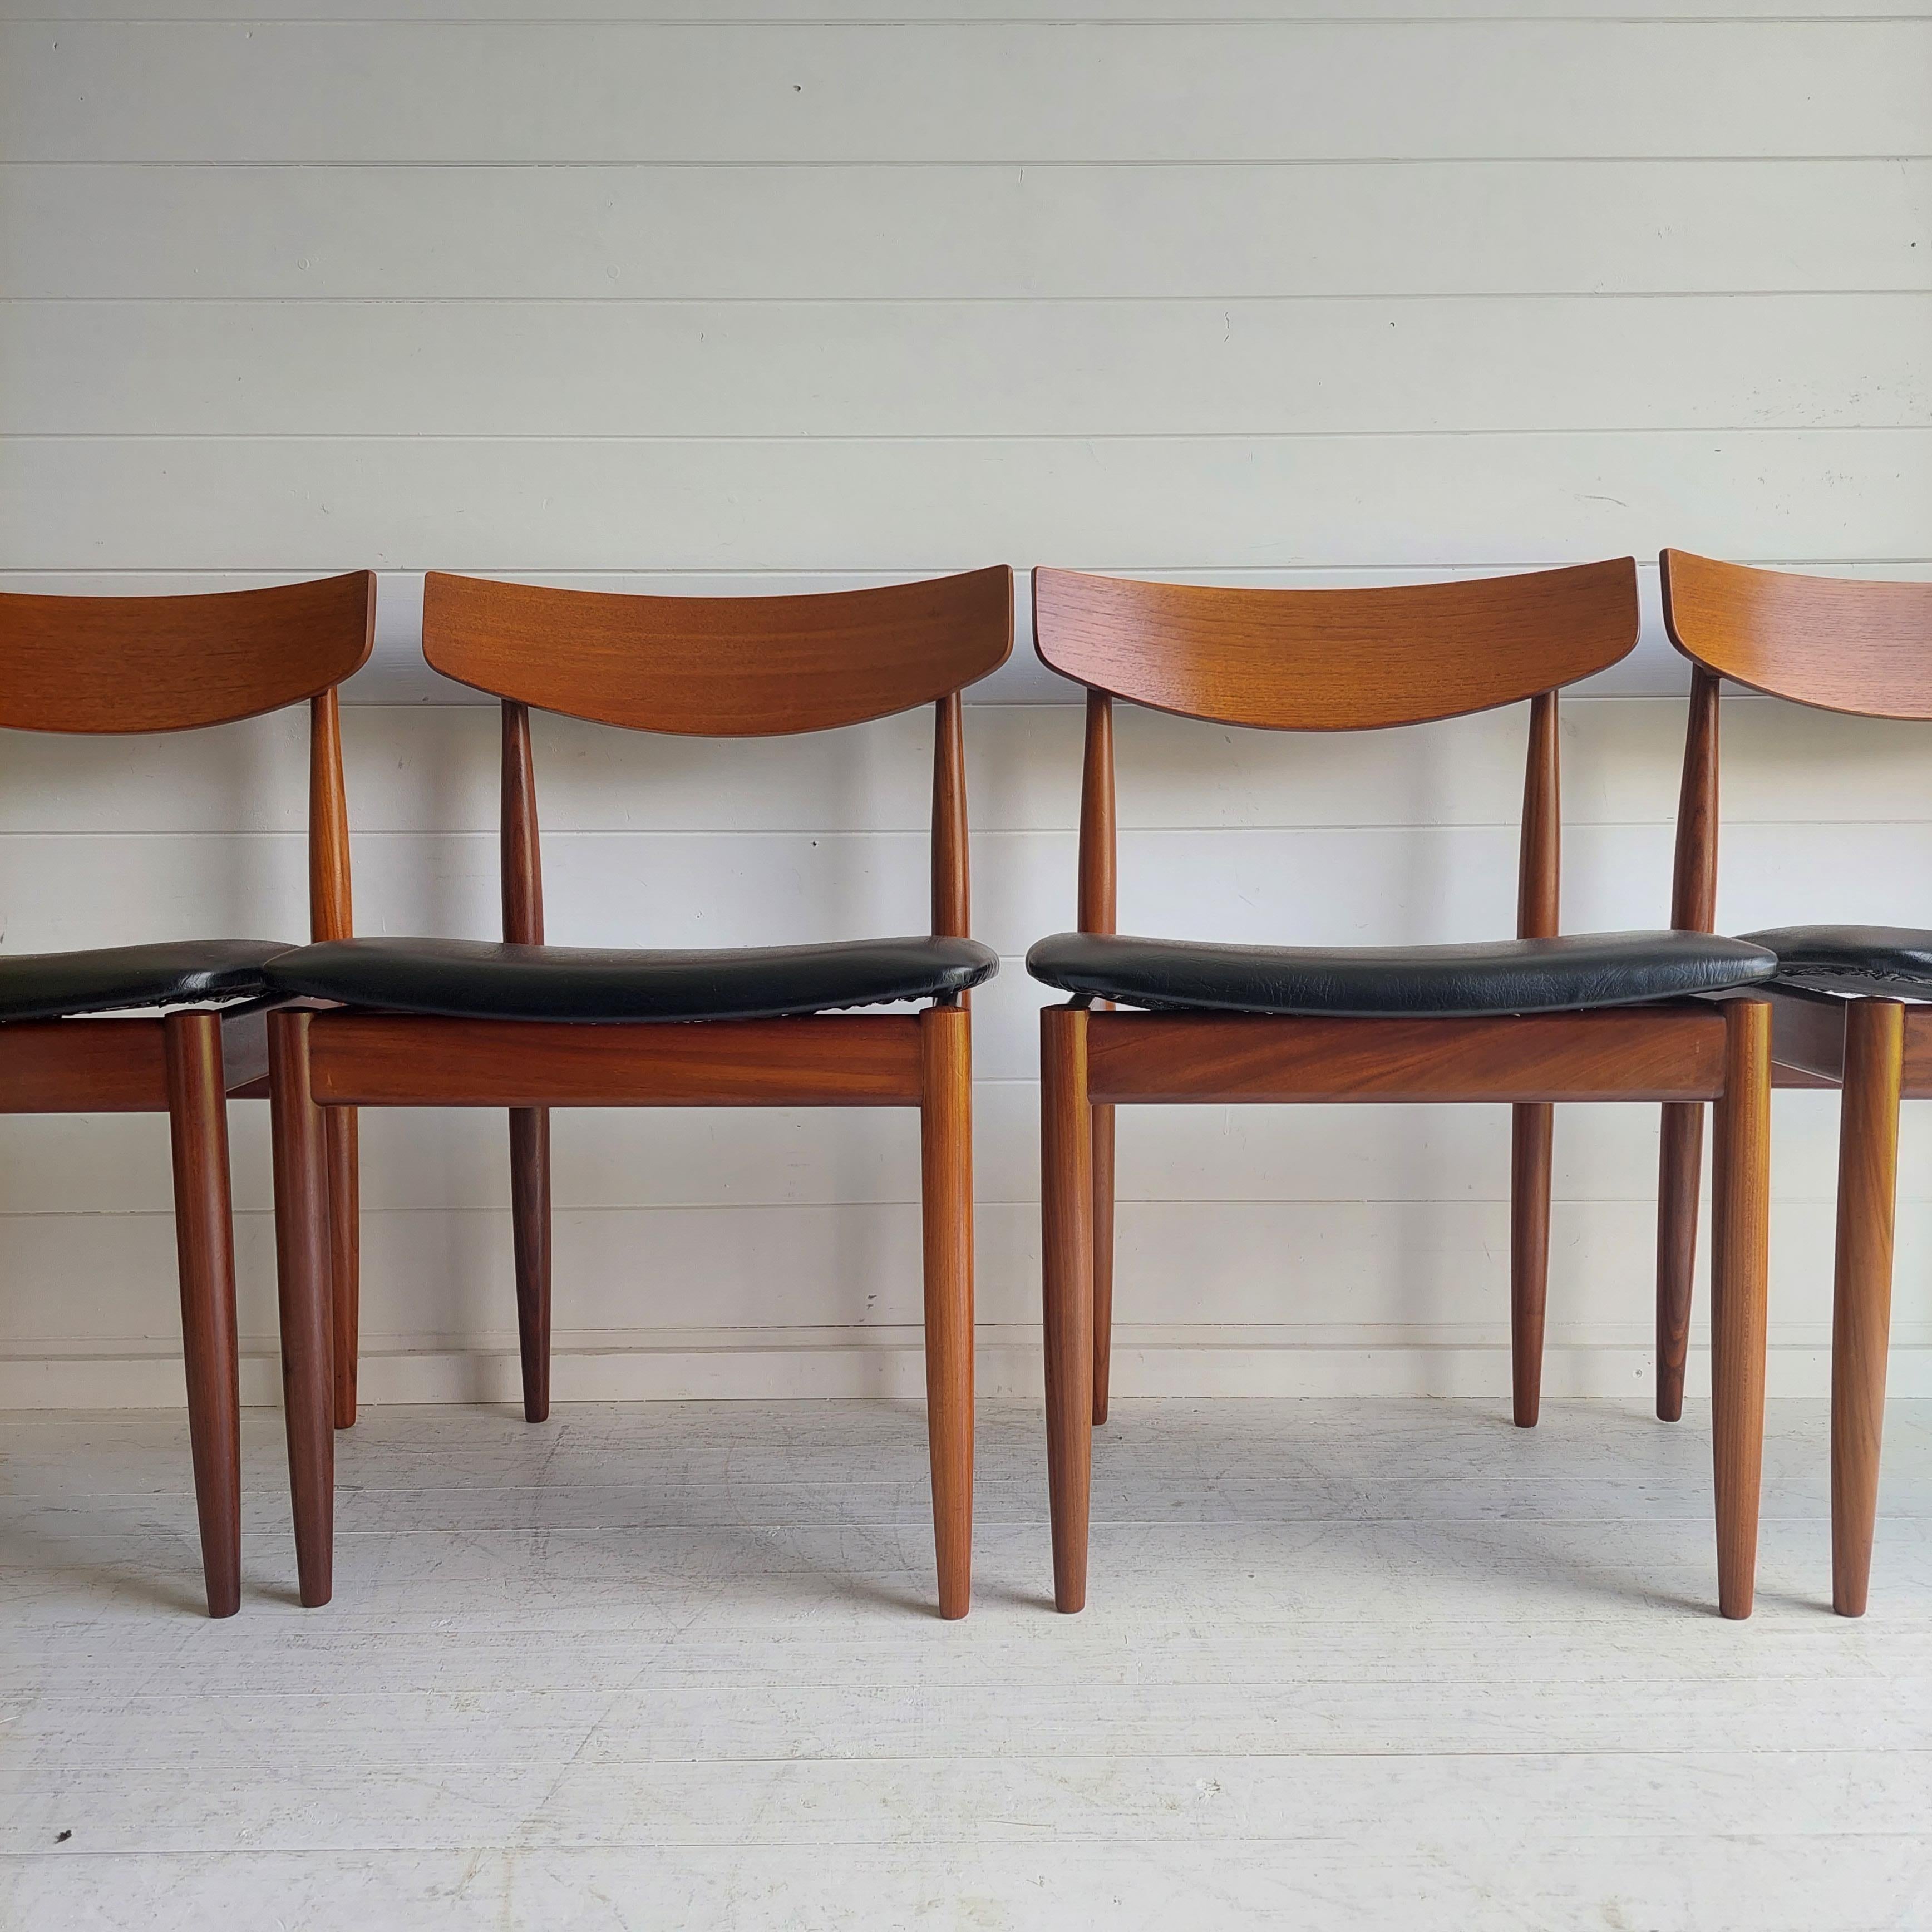 Midcentury Teak Dining Chairs Danish by Ib Kofod Larsen for G Plan Set of 4 1